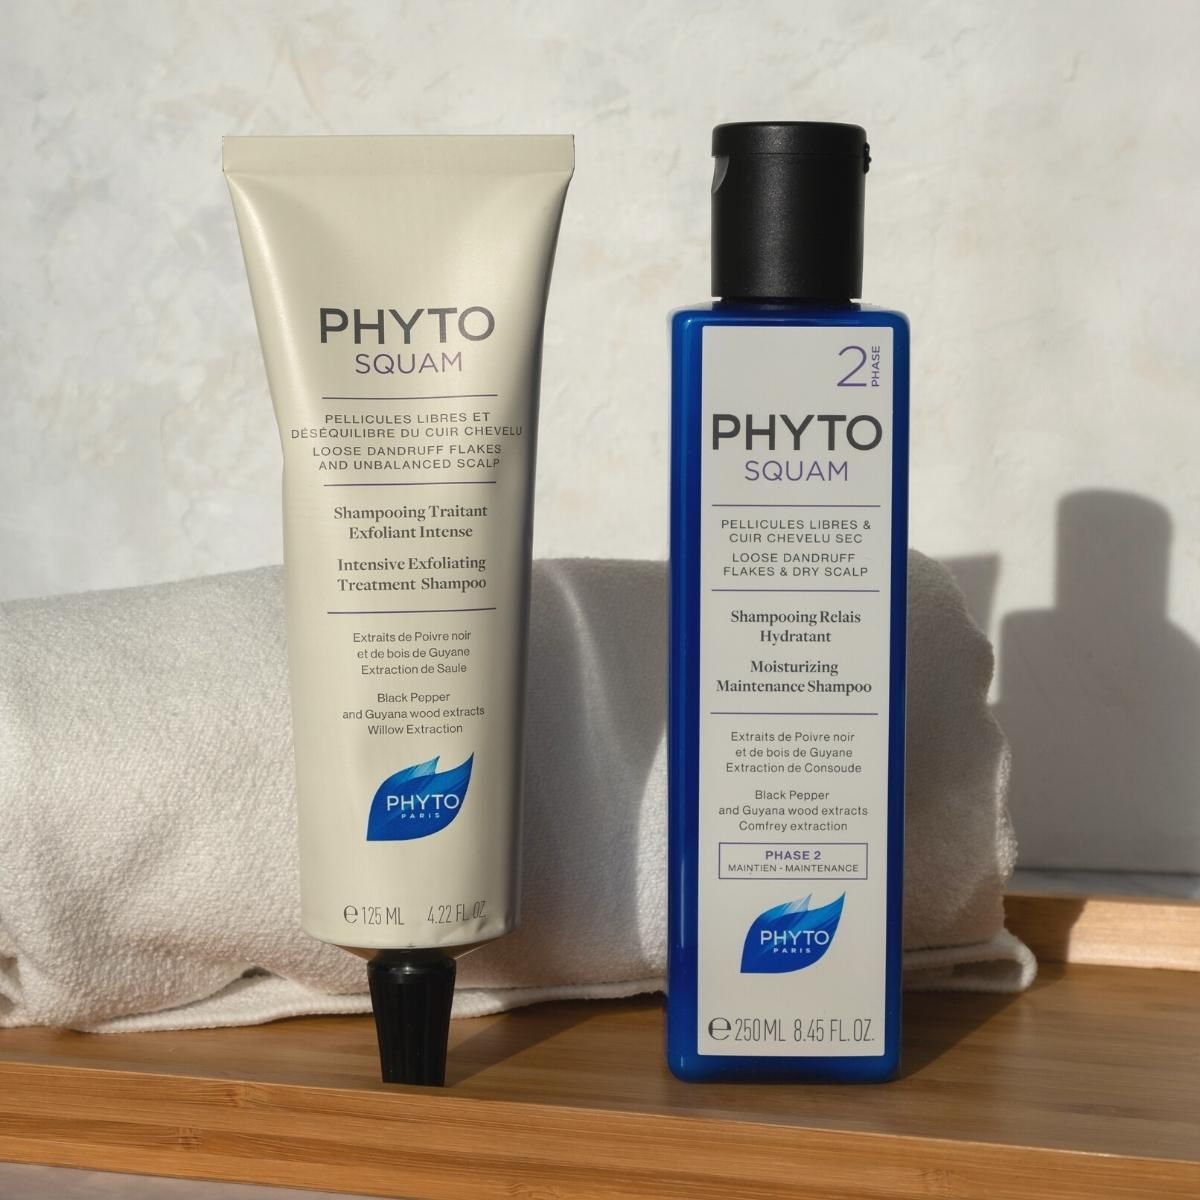 PHYTOSQUAM Moisturizing Maintenance Shampoo